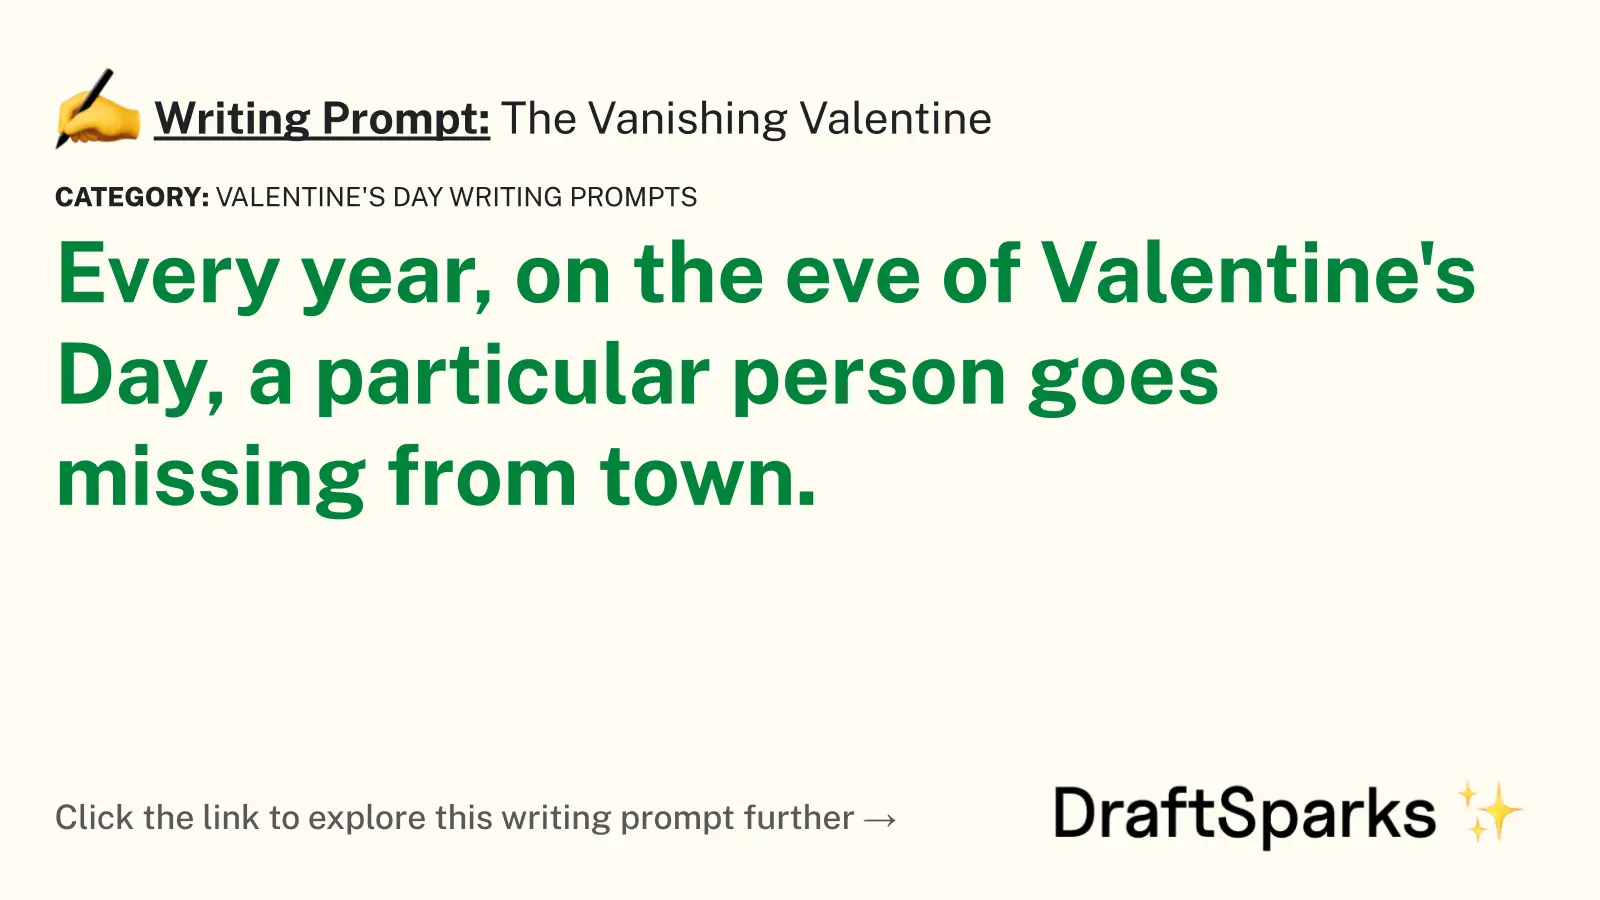 The Vanishing Valentine